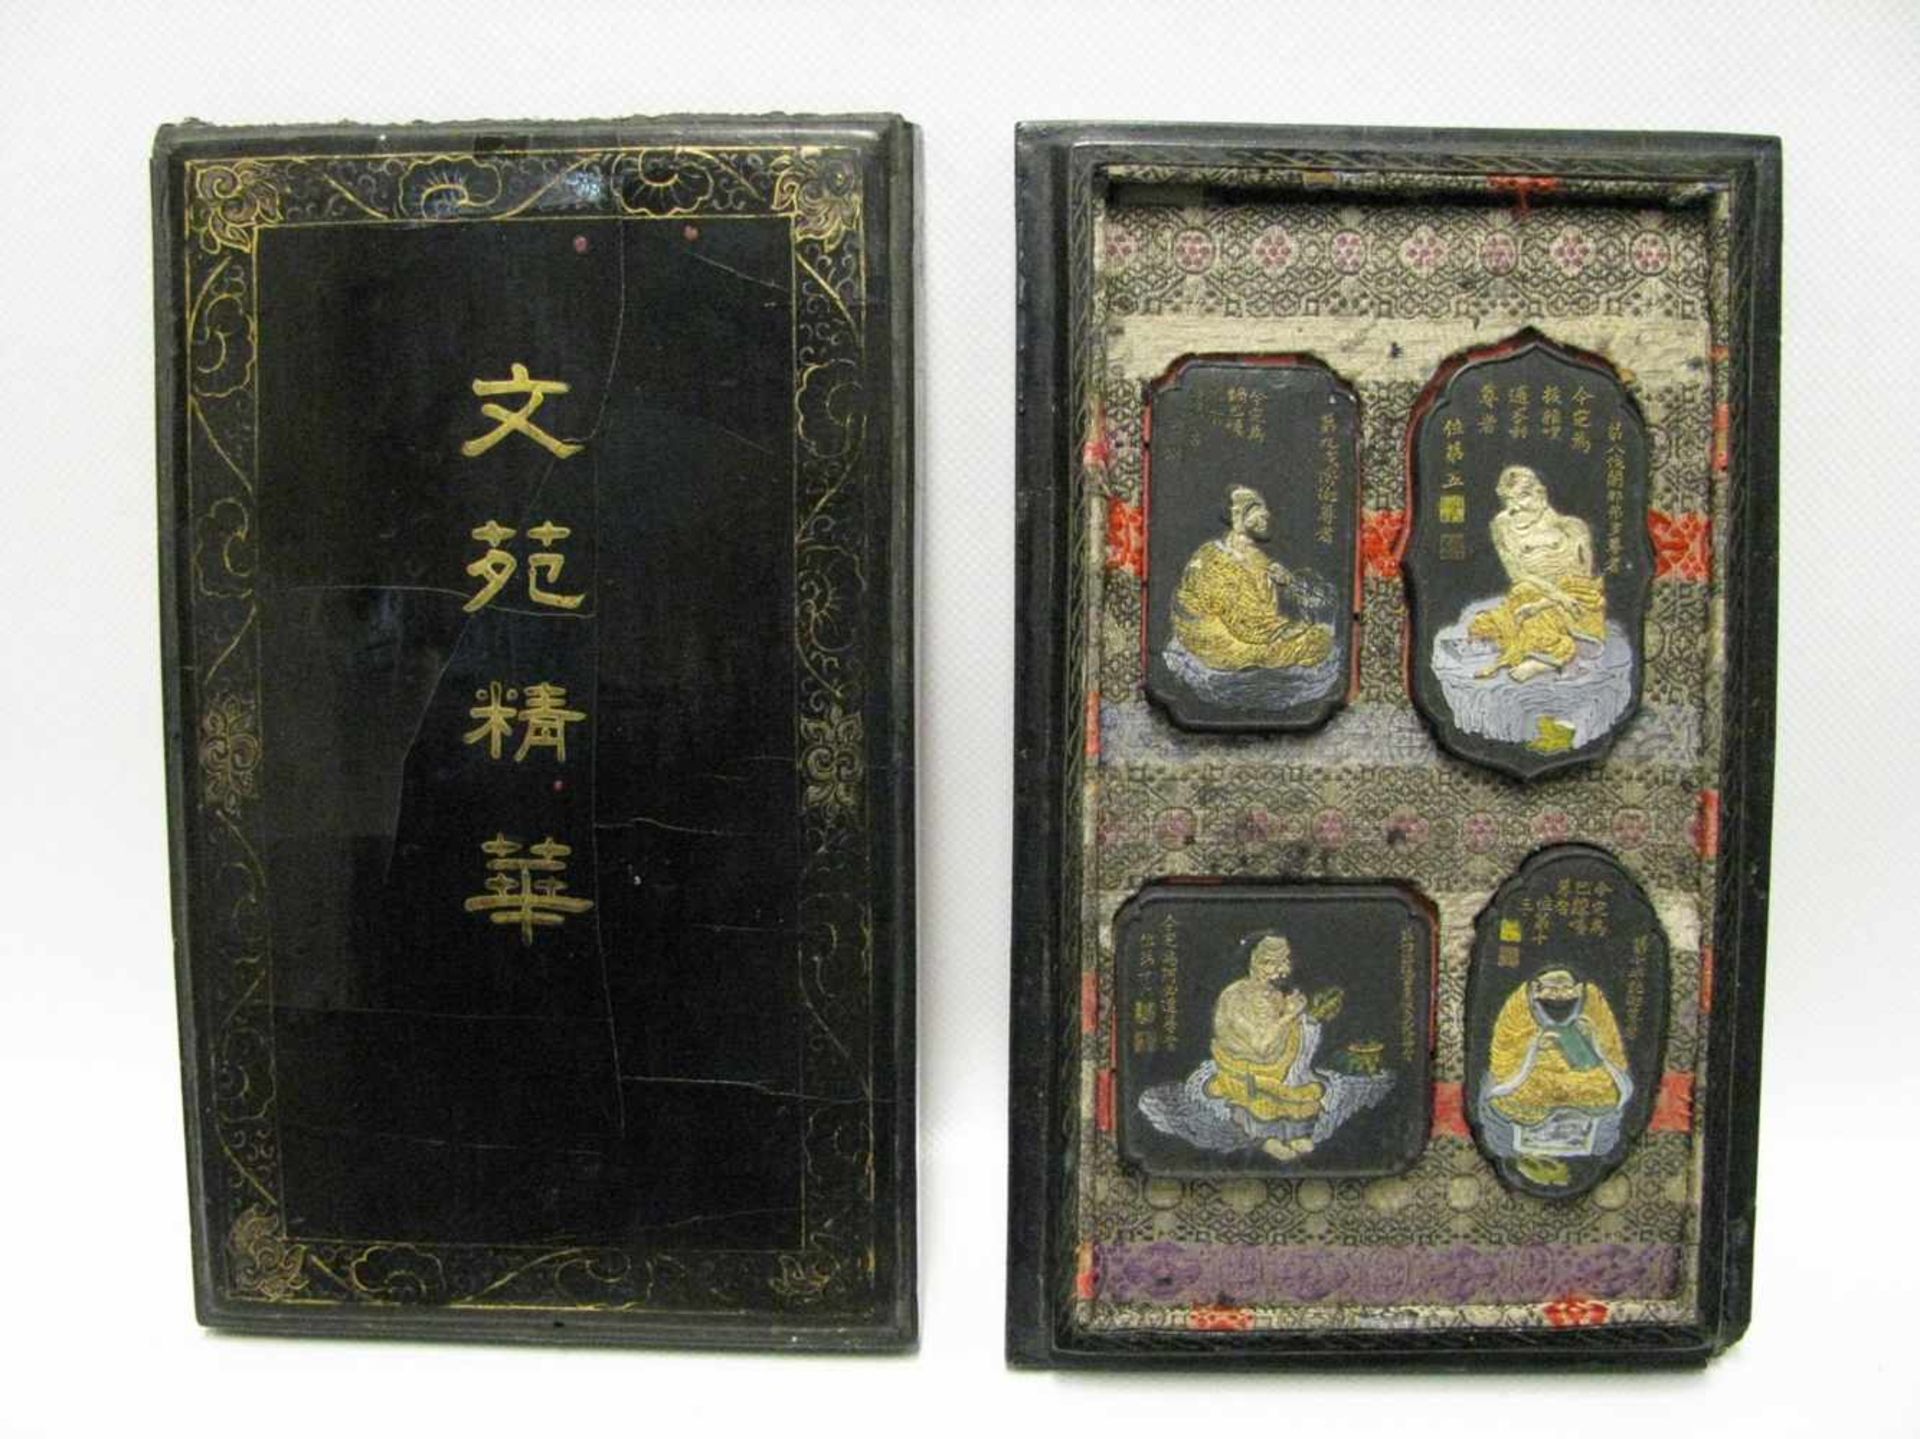 Siegeldose mit 4 Siegeln, China, antik, 24 x 16 cm, R.- - -19.00 % buyer's premium on the hammer